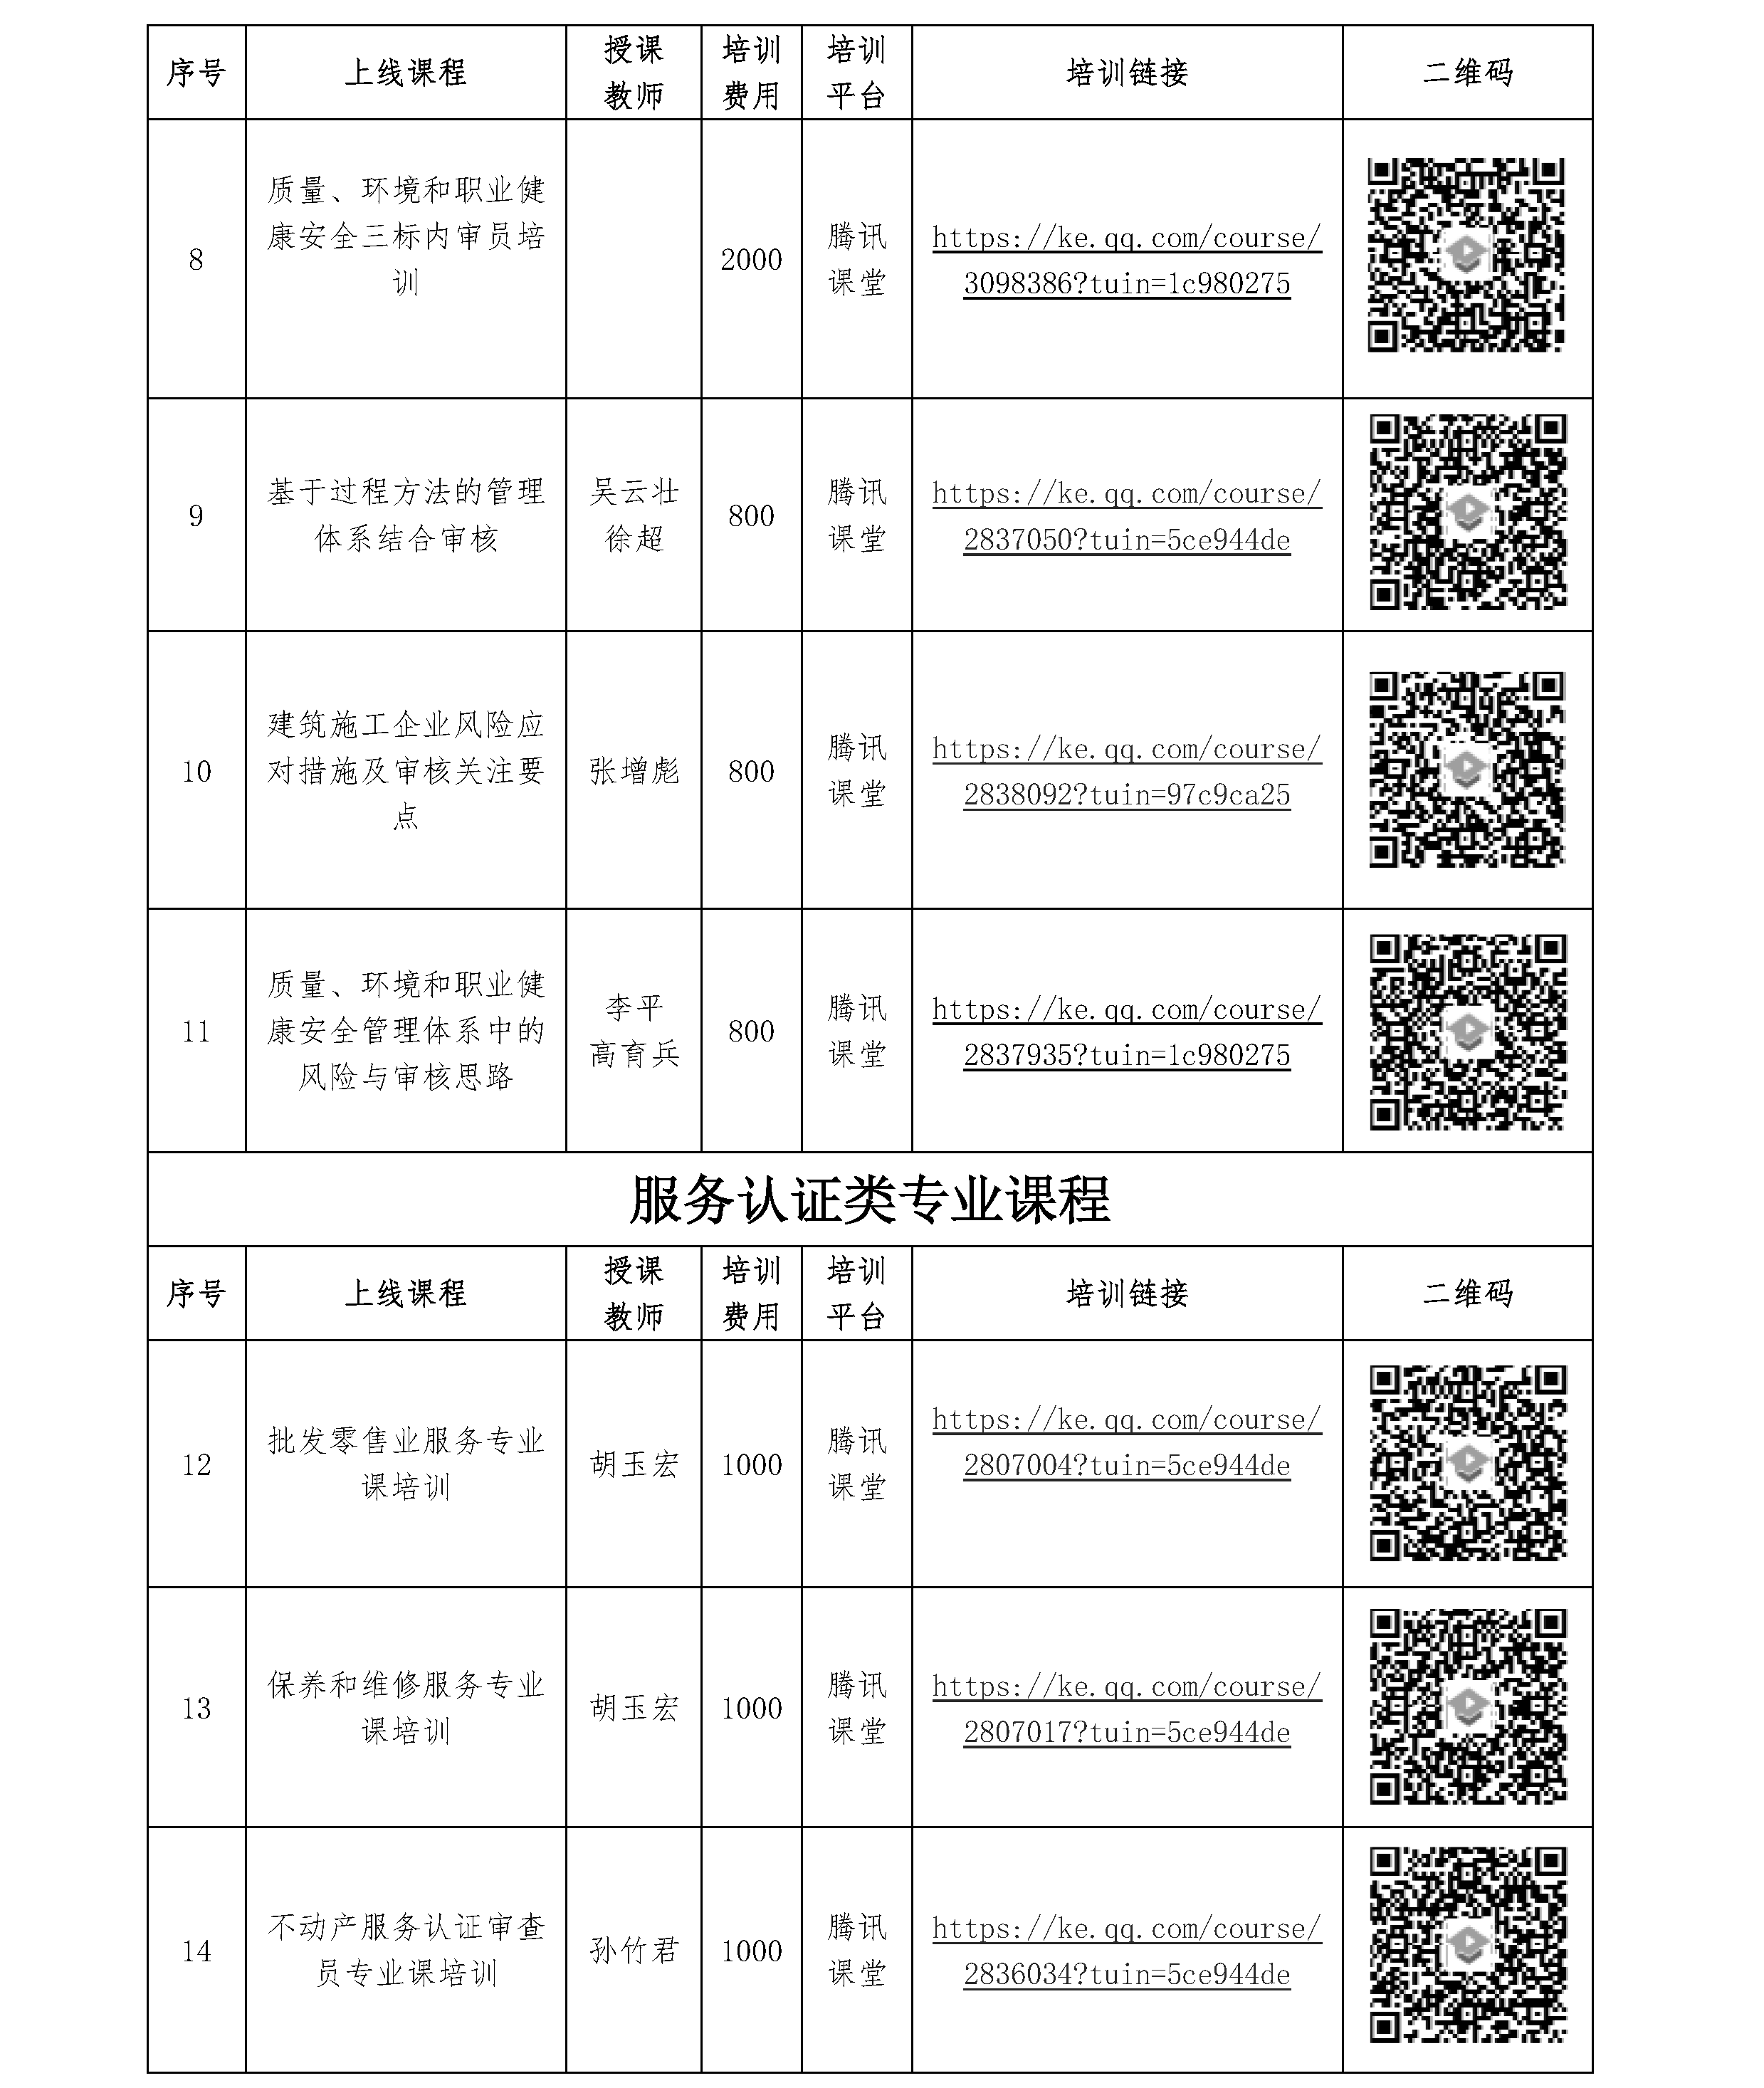 北京世标认证中心有限公司/国培认证培训（北京）中心 2021年一季度培训课程 (图2)